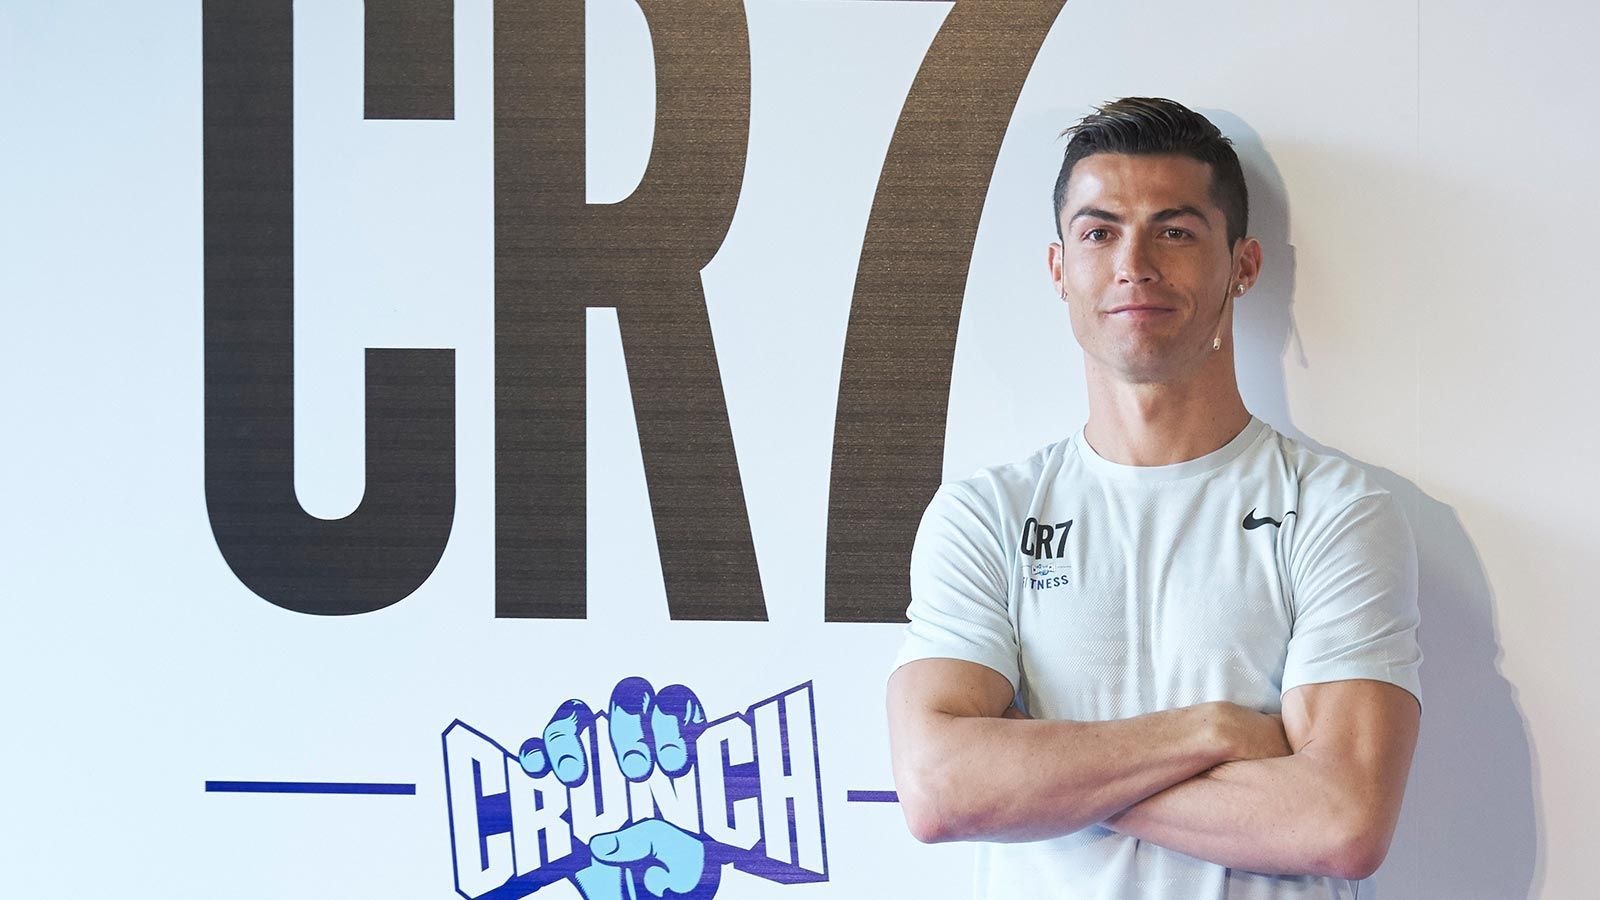 
                <strong>"CR7 Crunch Fitness" </strong><br>
                Eigentlich keine Überraschung ist die Tatsache, dass Ronaldo auch Eigentümer mehrerer Fitnessstudios ist. Der Portugiese startete anfangs mit zwei Studios in Madrid, mittlerweile hat die Kette zahlreiche Ableger. Nach Angaben der Website sind es über 300, als neuer Standort soll bald Lissabon dazukommen. 
              